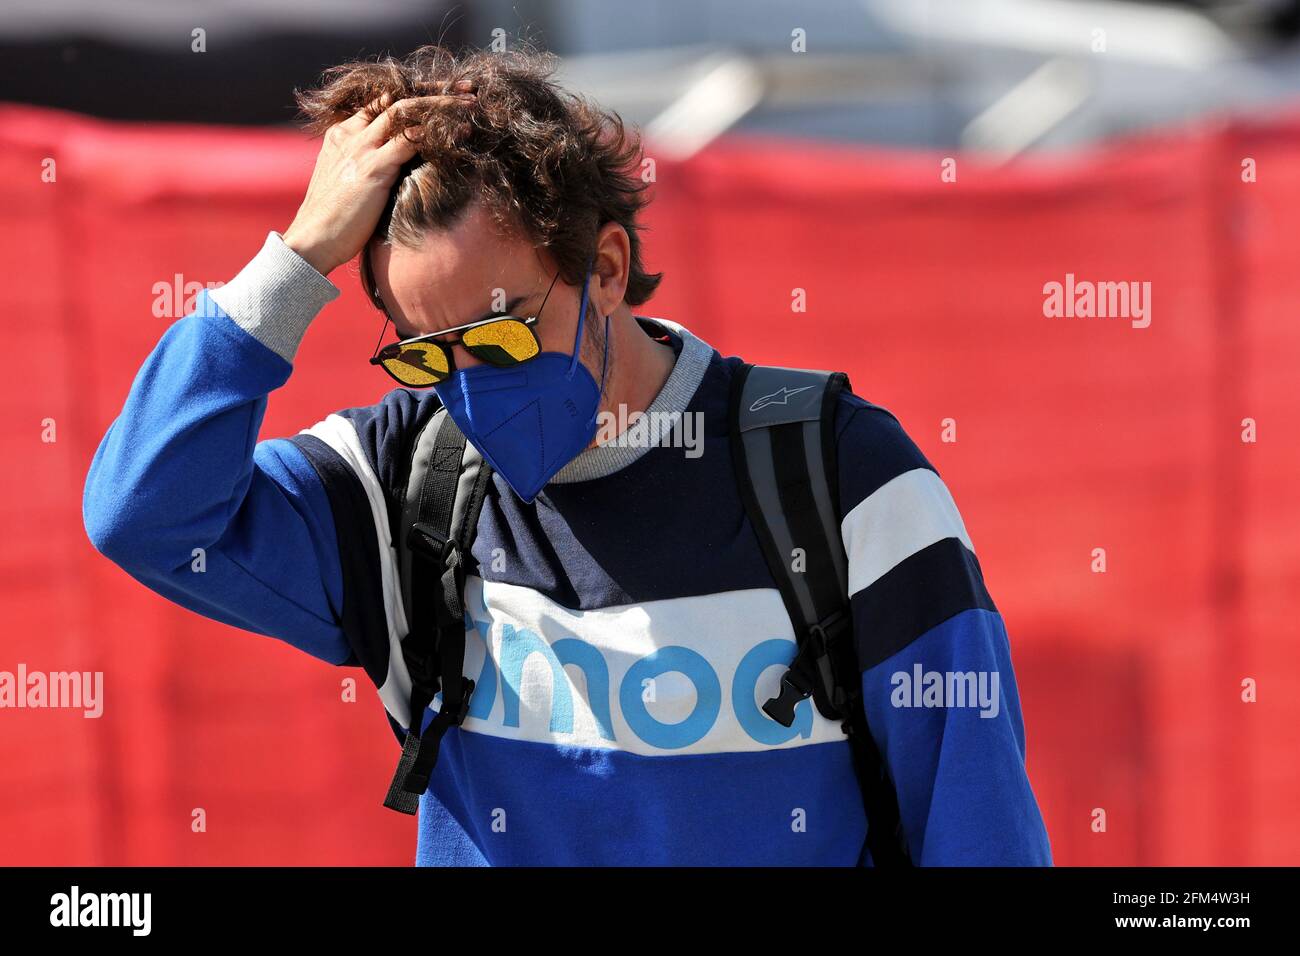 Barcelone, Espagne. 6 mai 2021. Fernando Alonso (ESP) Alpine F1 Team. 06.05.2021. Championnat du monde de Formule 1, Rd 4, Grand Prix d'Espagne, Barcelone, Espagne, Journée de préparation. Le crédit photo doit être lu : images XPB/Press Association. Crédit : XPB Images Ltd/Alamy Live News Banque D'Images